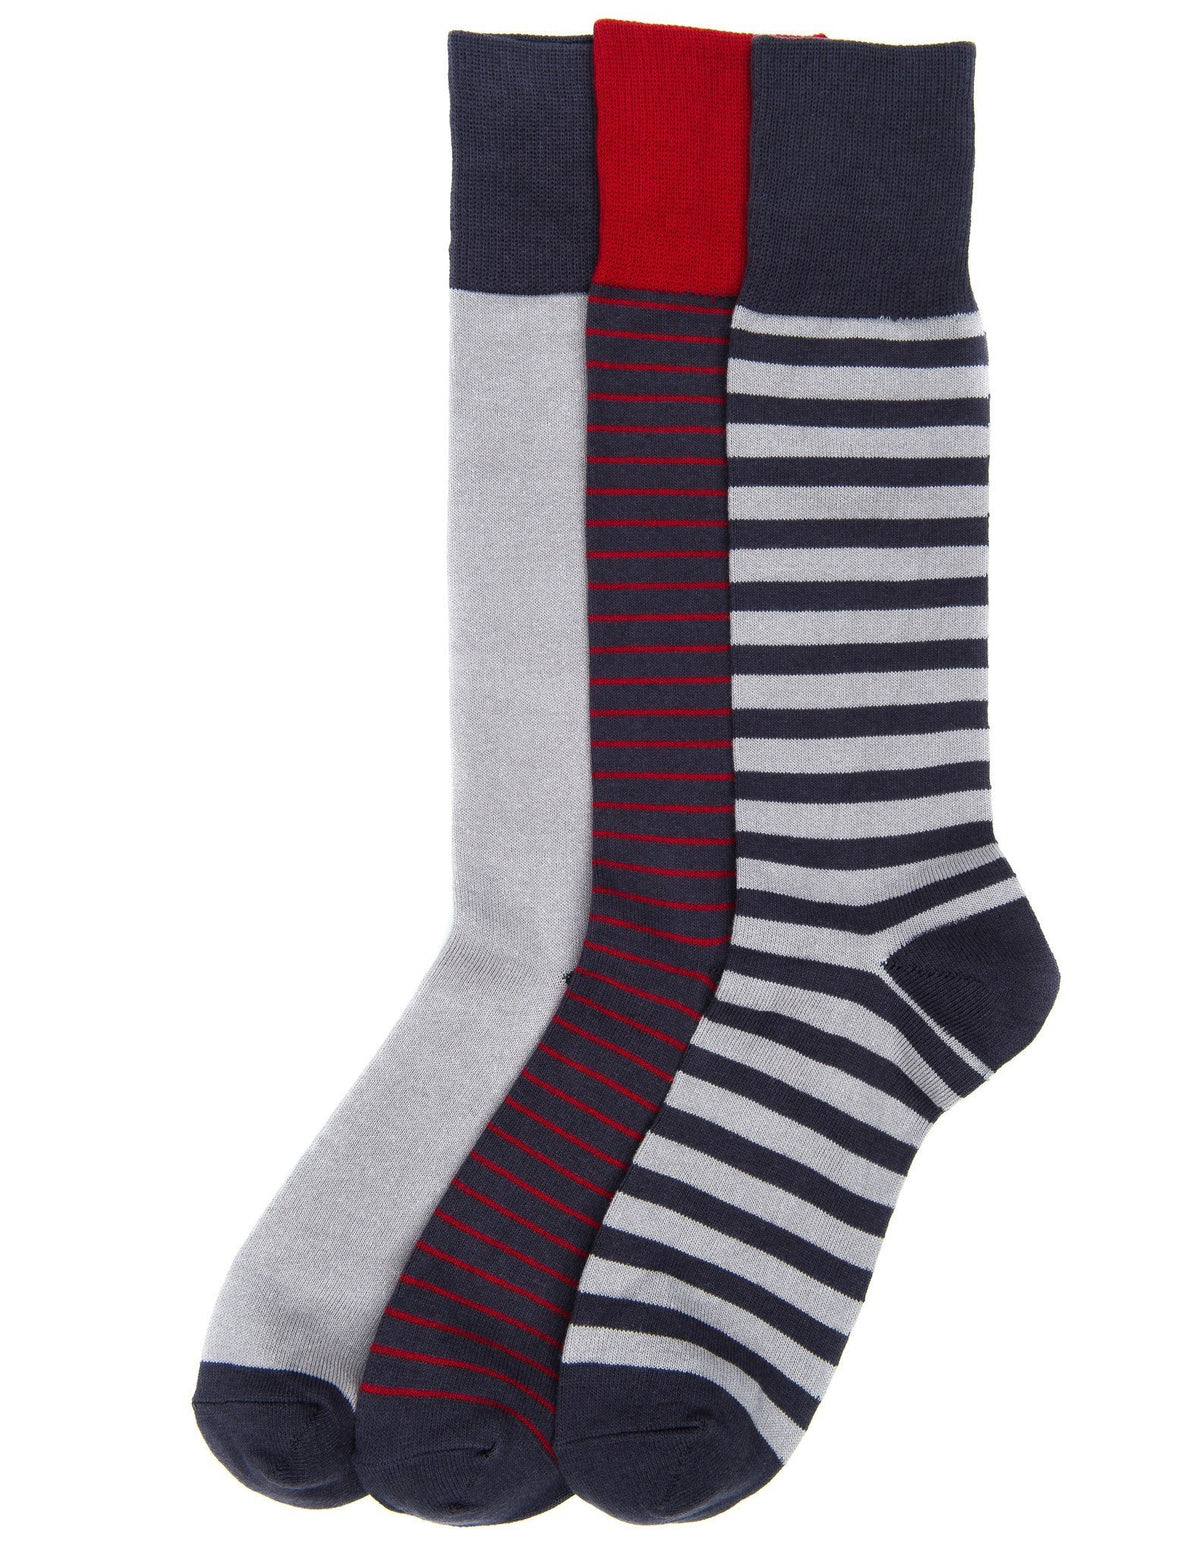 Men's Combed Cotton Dress Socks 3-Pack - Set A8